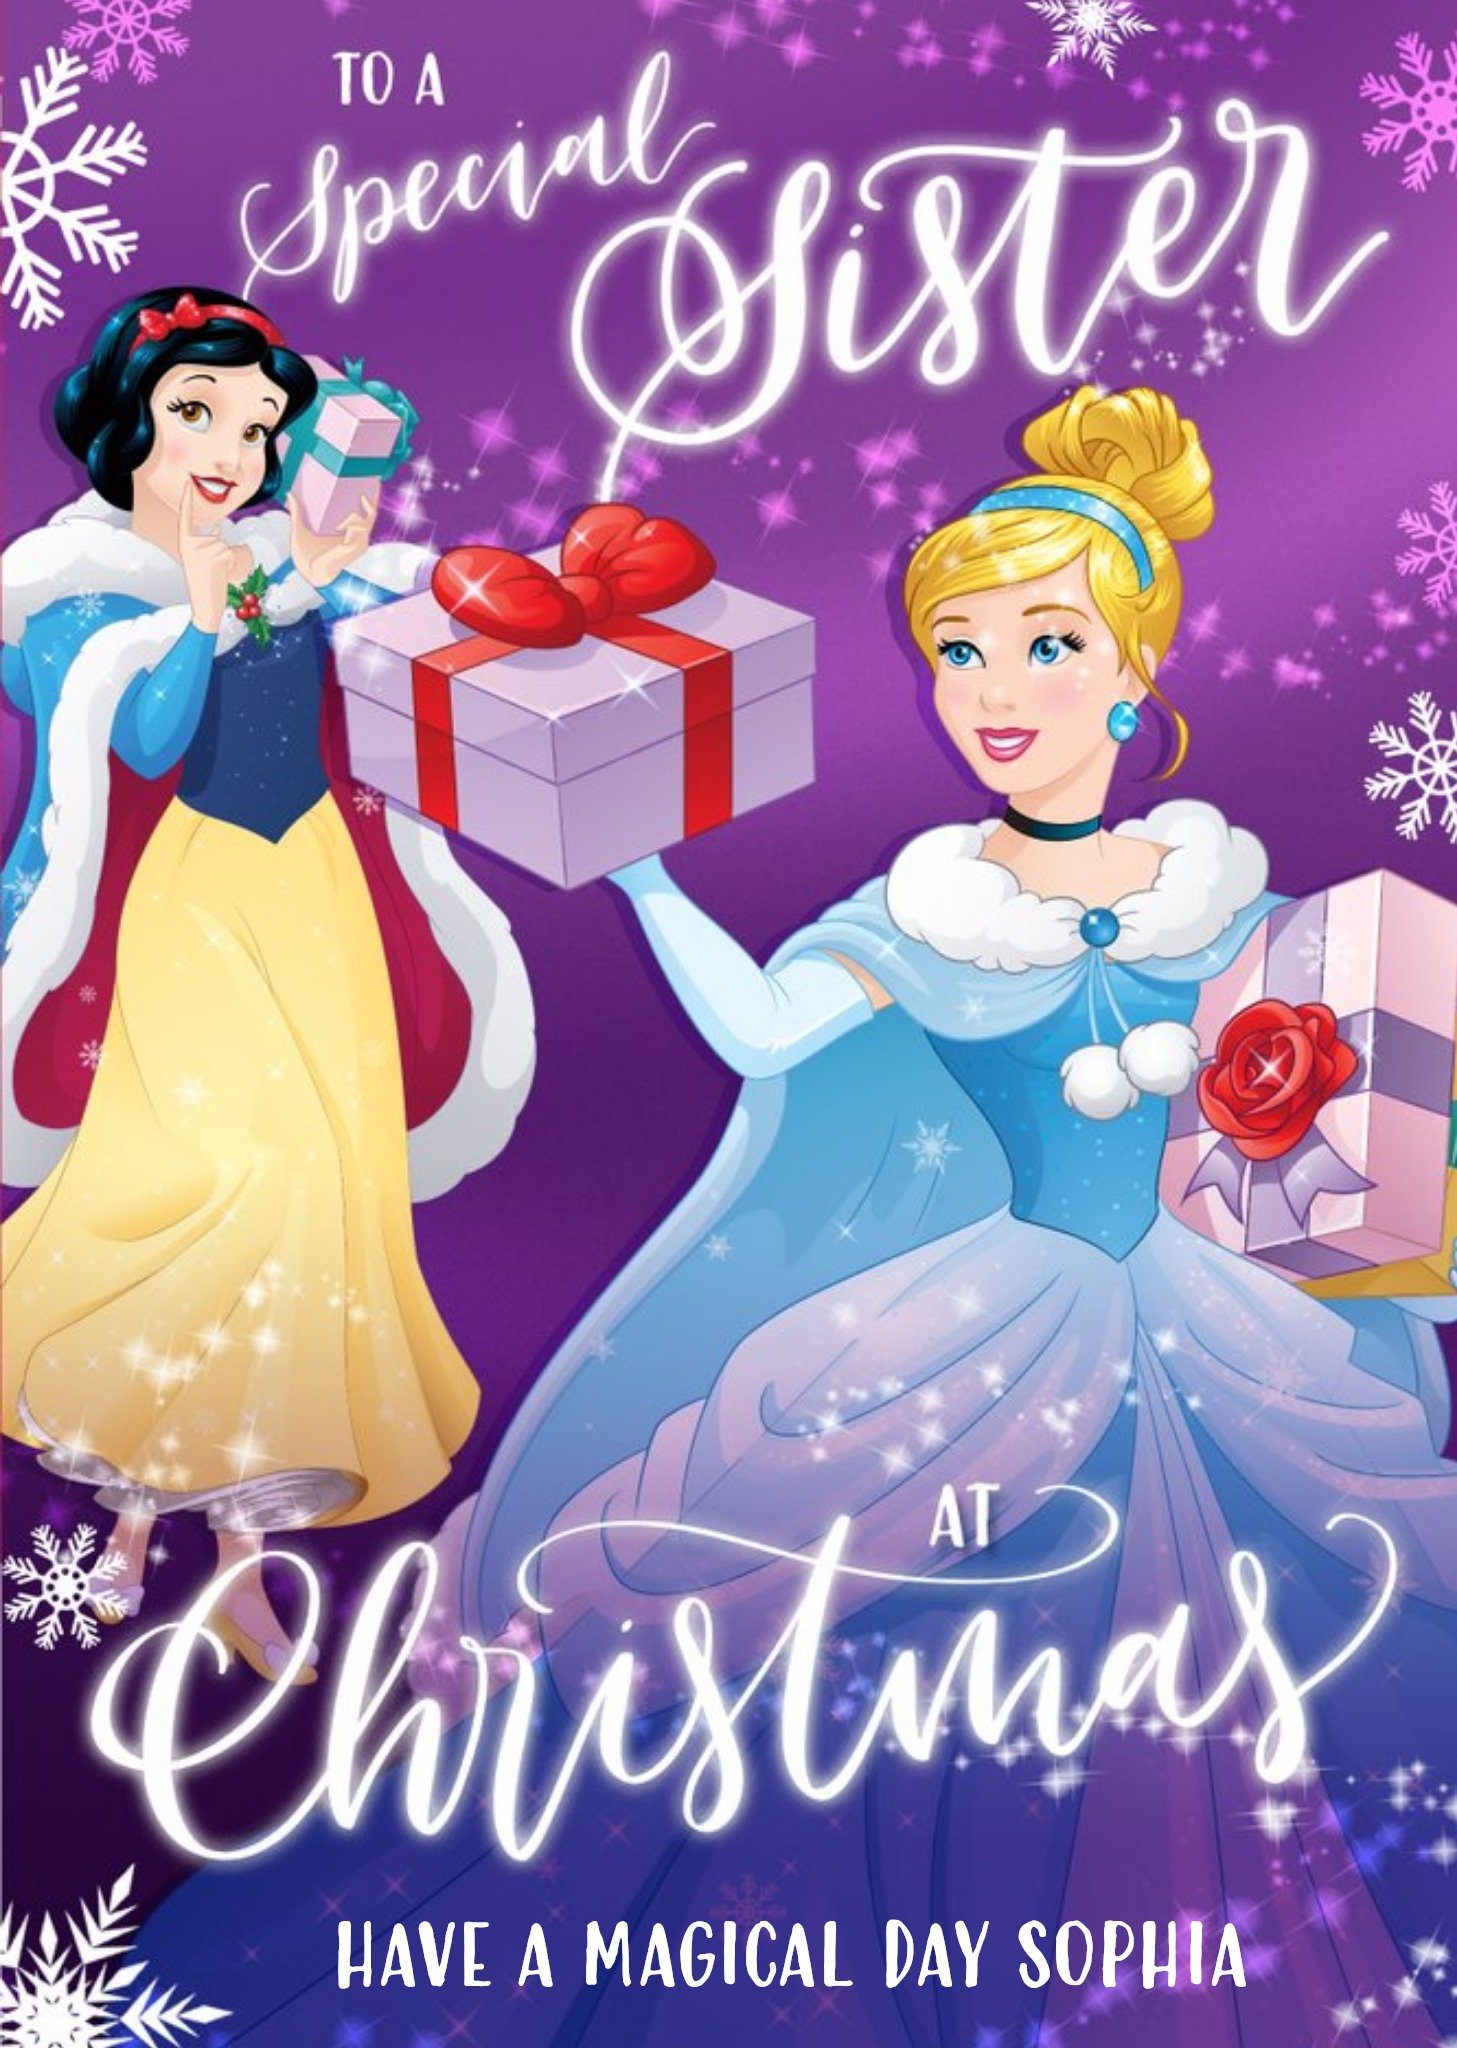 Disney Princesses Disney Princess Special Sister Christmas Card Ecard